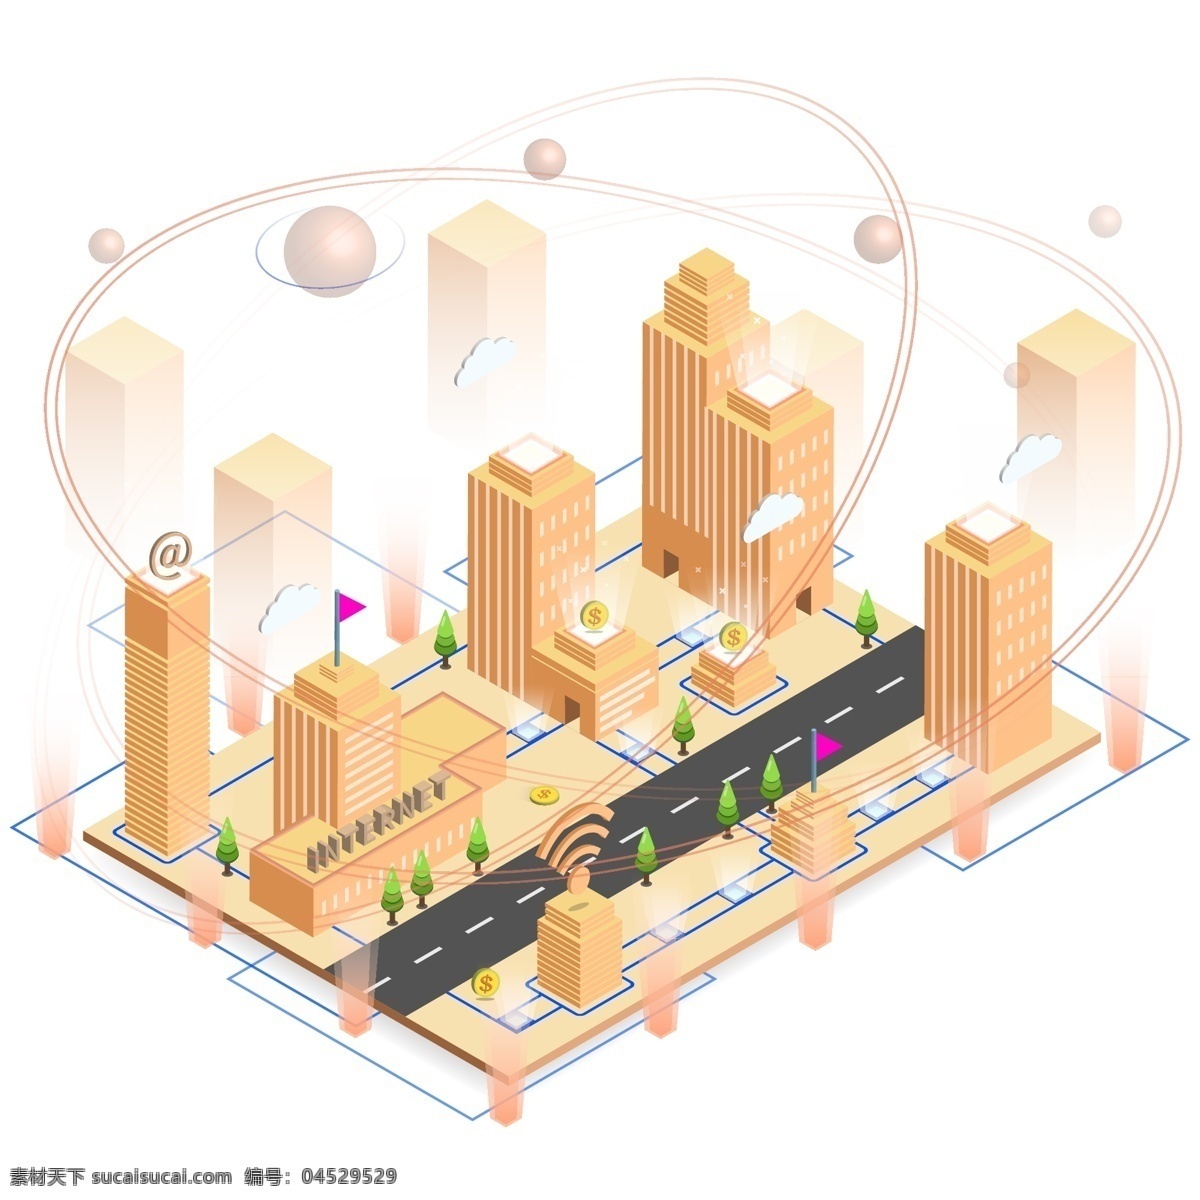 d 科技 互联网 城市 未来 信息化 智能建筑 建筑 网络 wifi 2.5d 未来城市 智慧城市 智能城市 街道 沿街建筑 管道 城市管网 信息传递